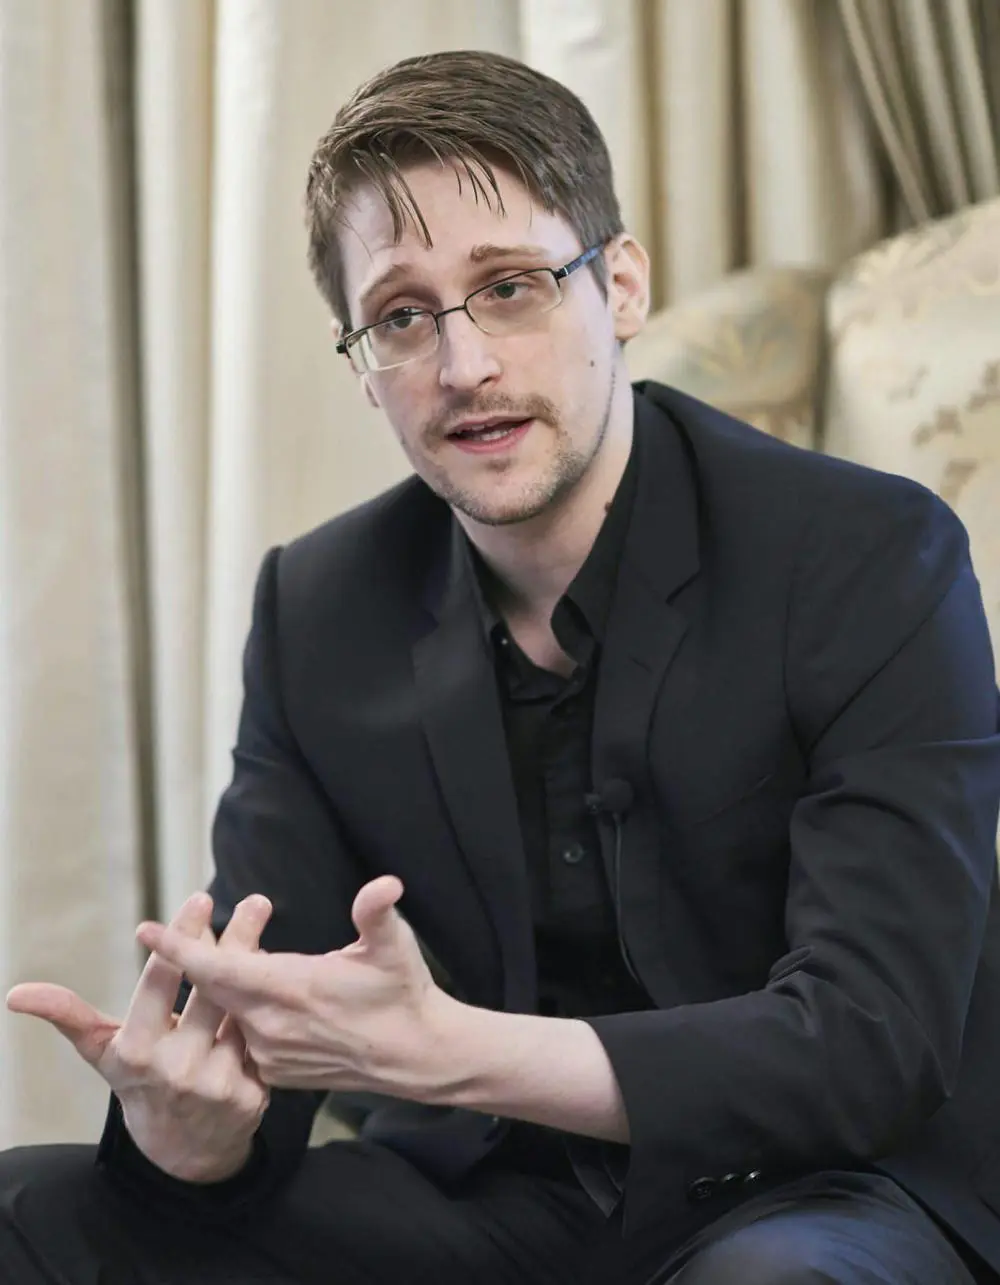 Edward Snowden im schwarzen Anzug gestikuliert